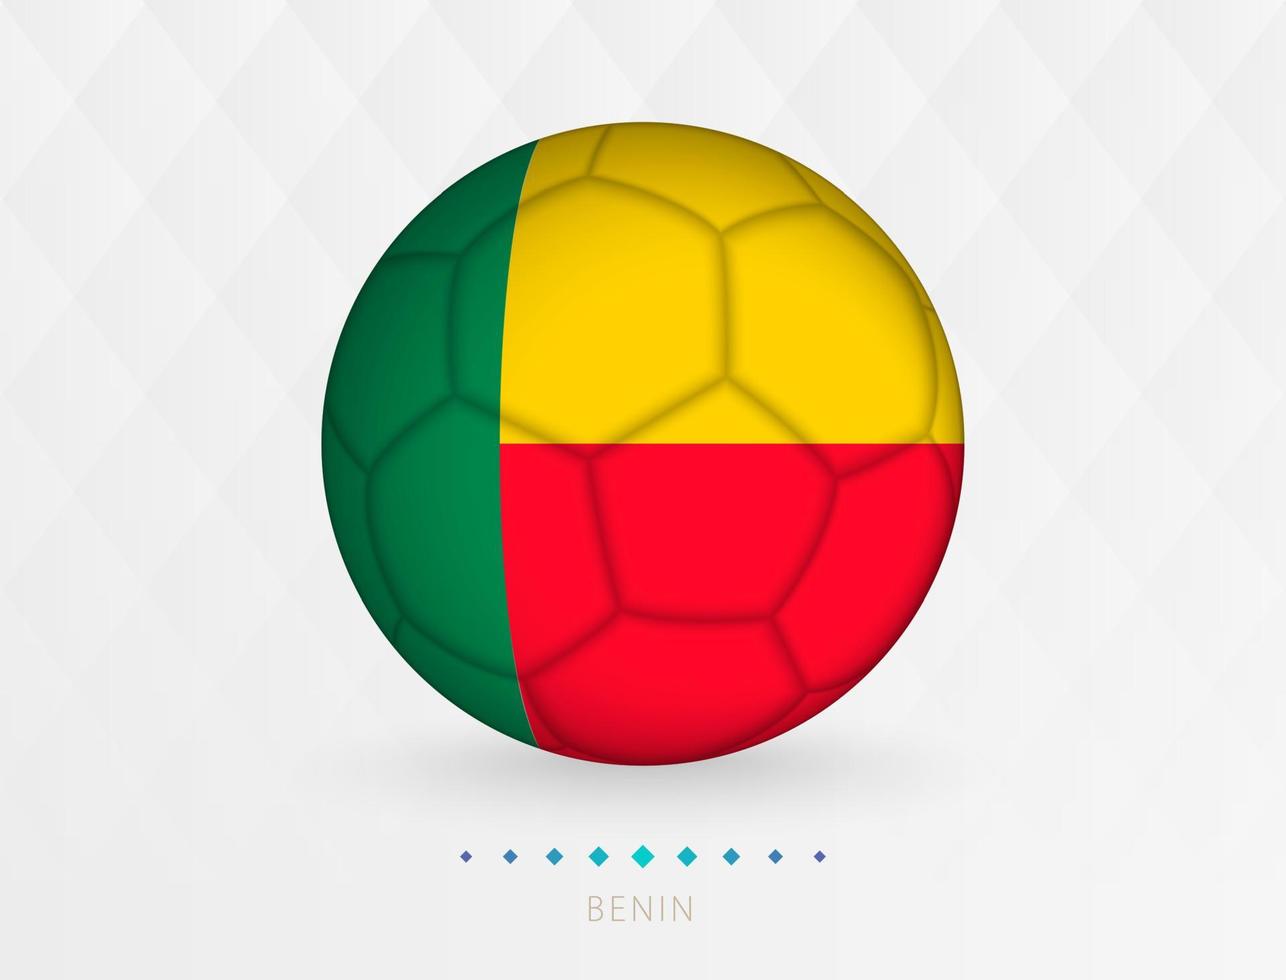 calcio palla con benin bandiera modello, calcio palla con bandiera di benin nazionale squadra. vettore